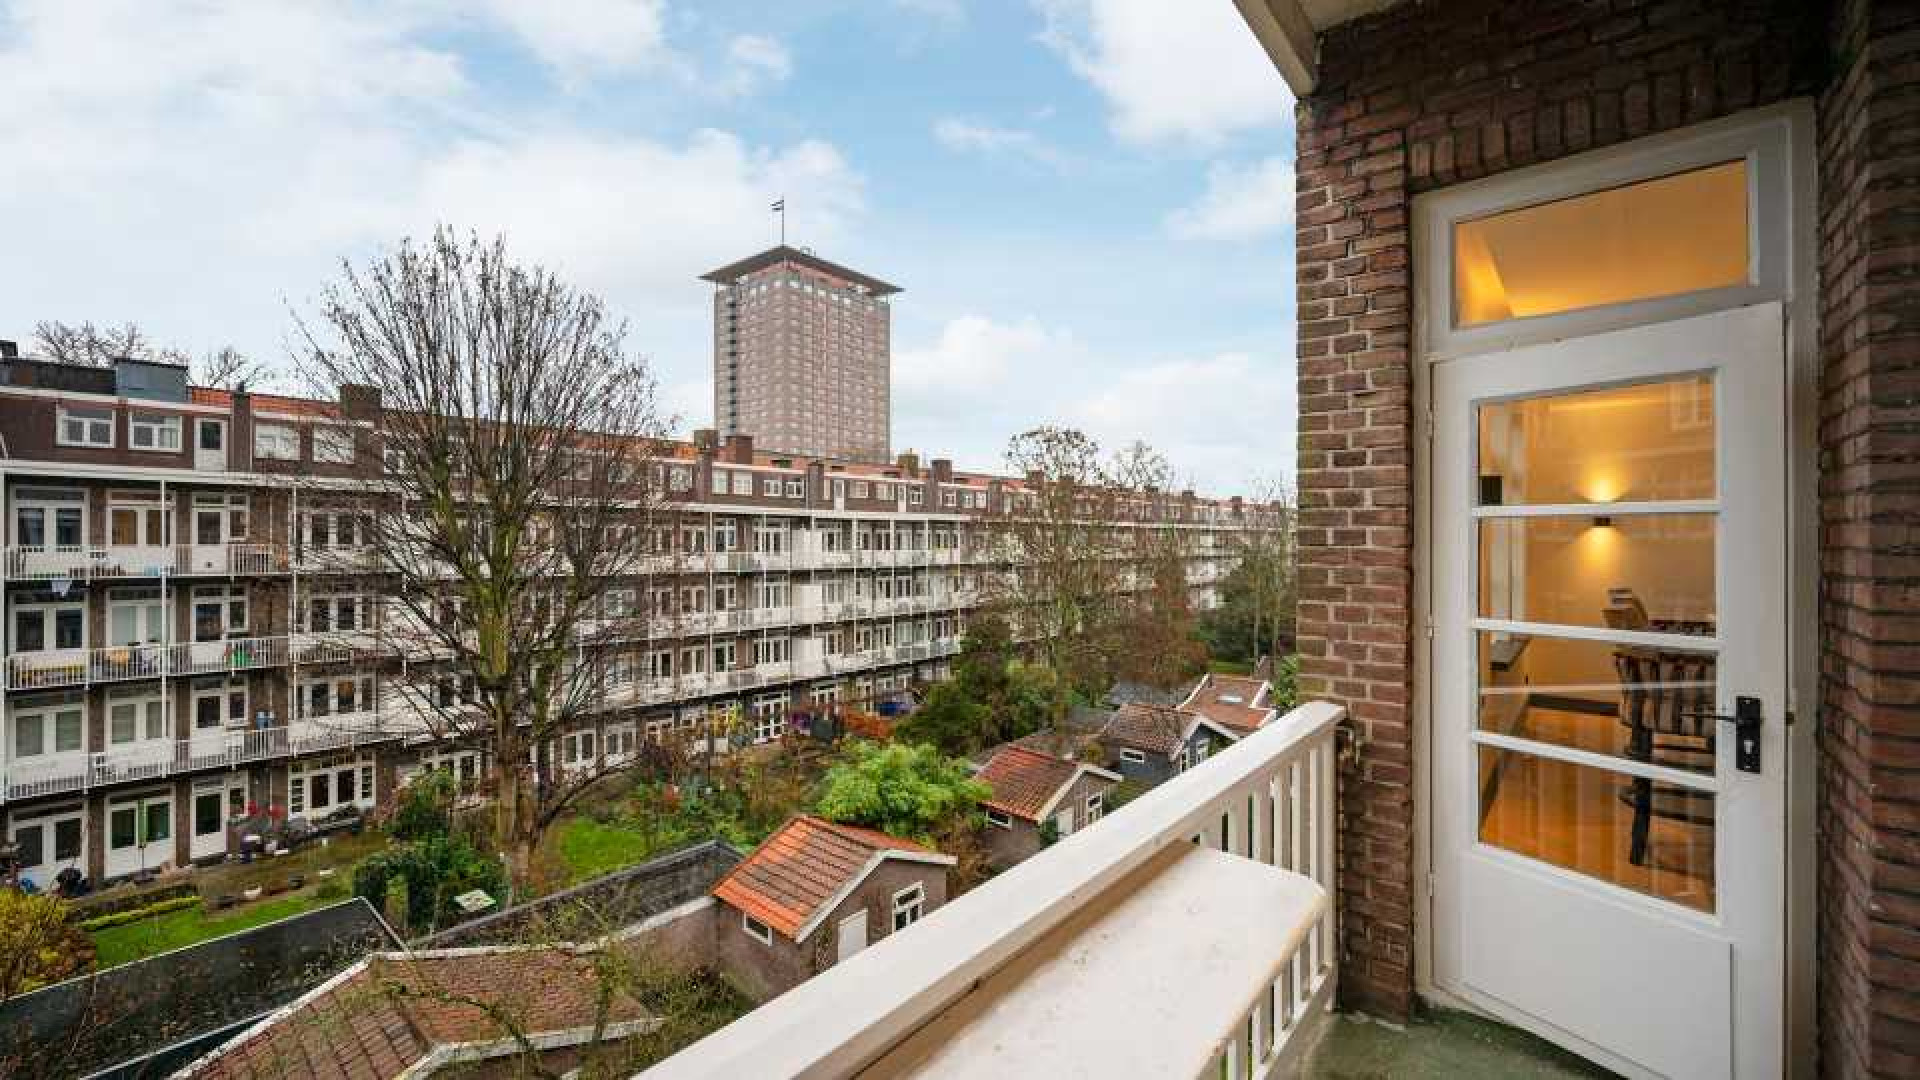 Topvoetballer Steven Bergwijn zet zijn Amsterdamse appartement te huur. Zie foto's 20